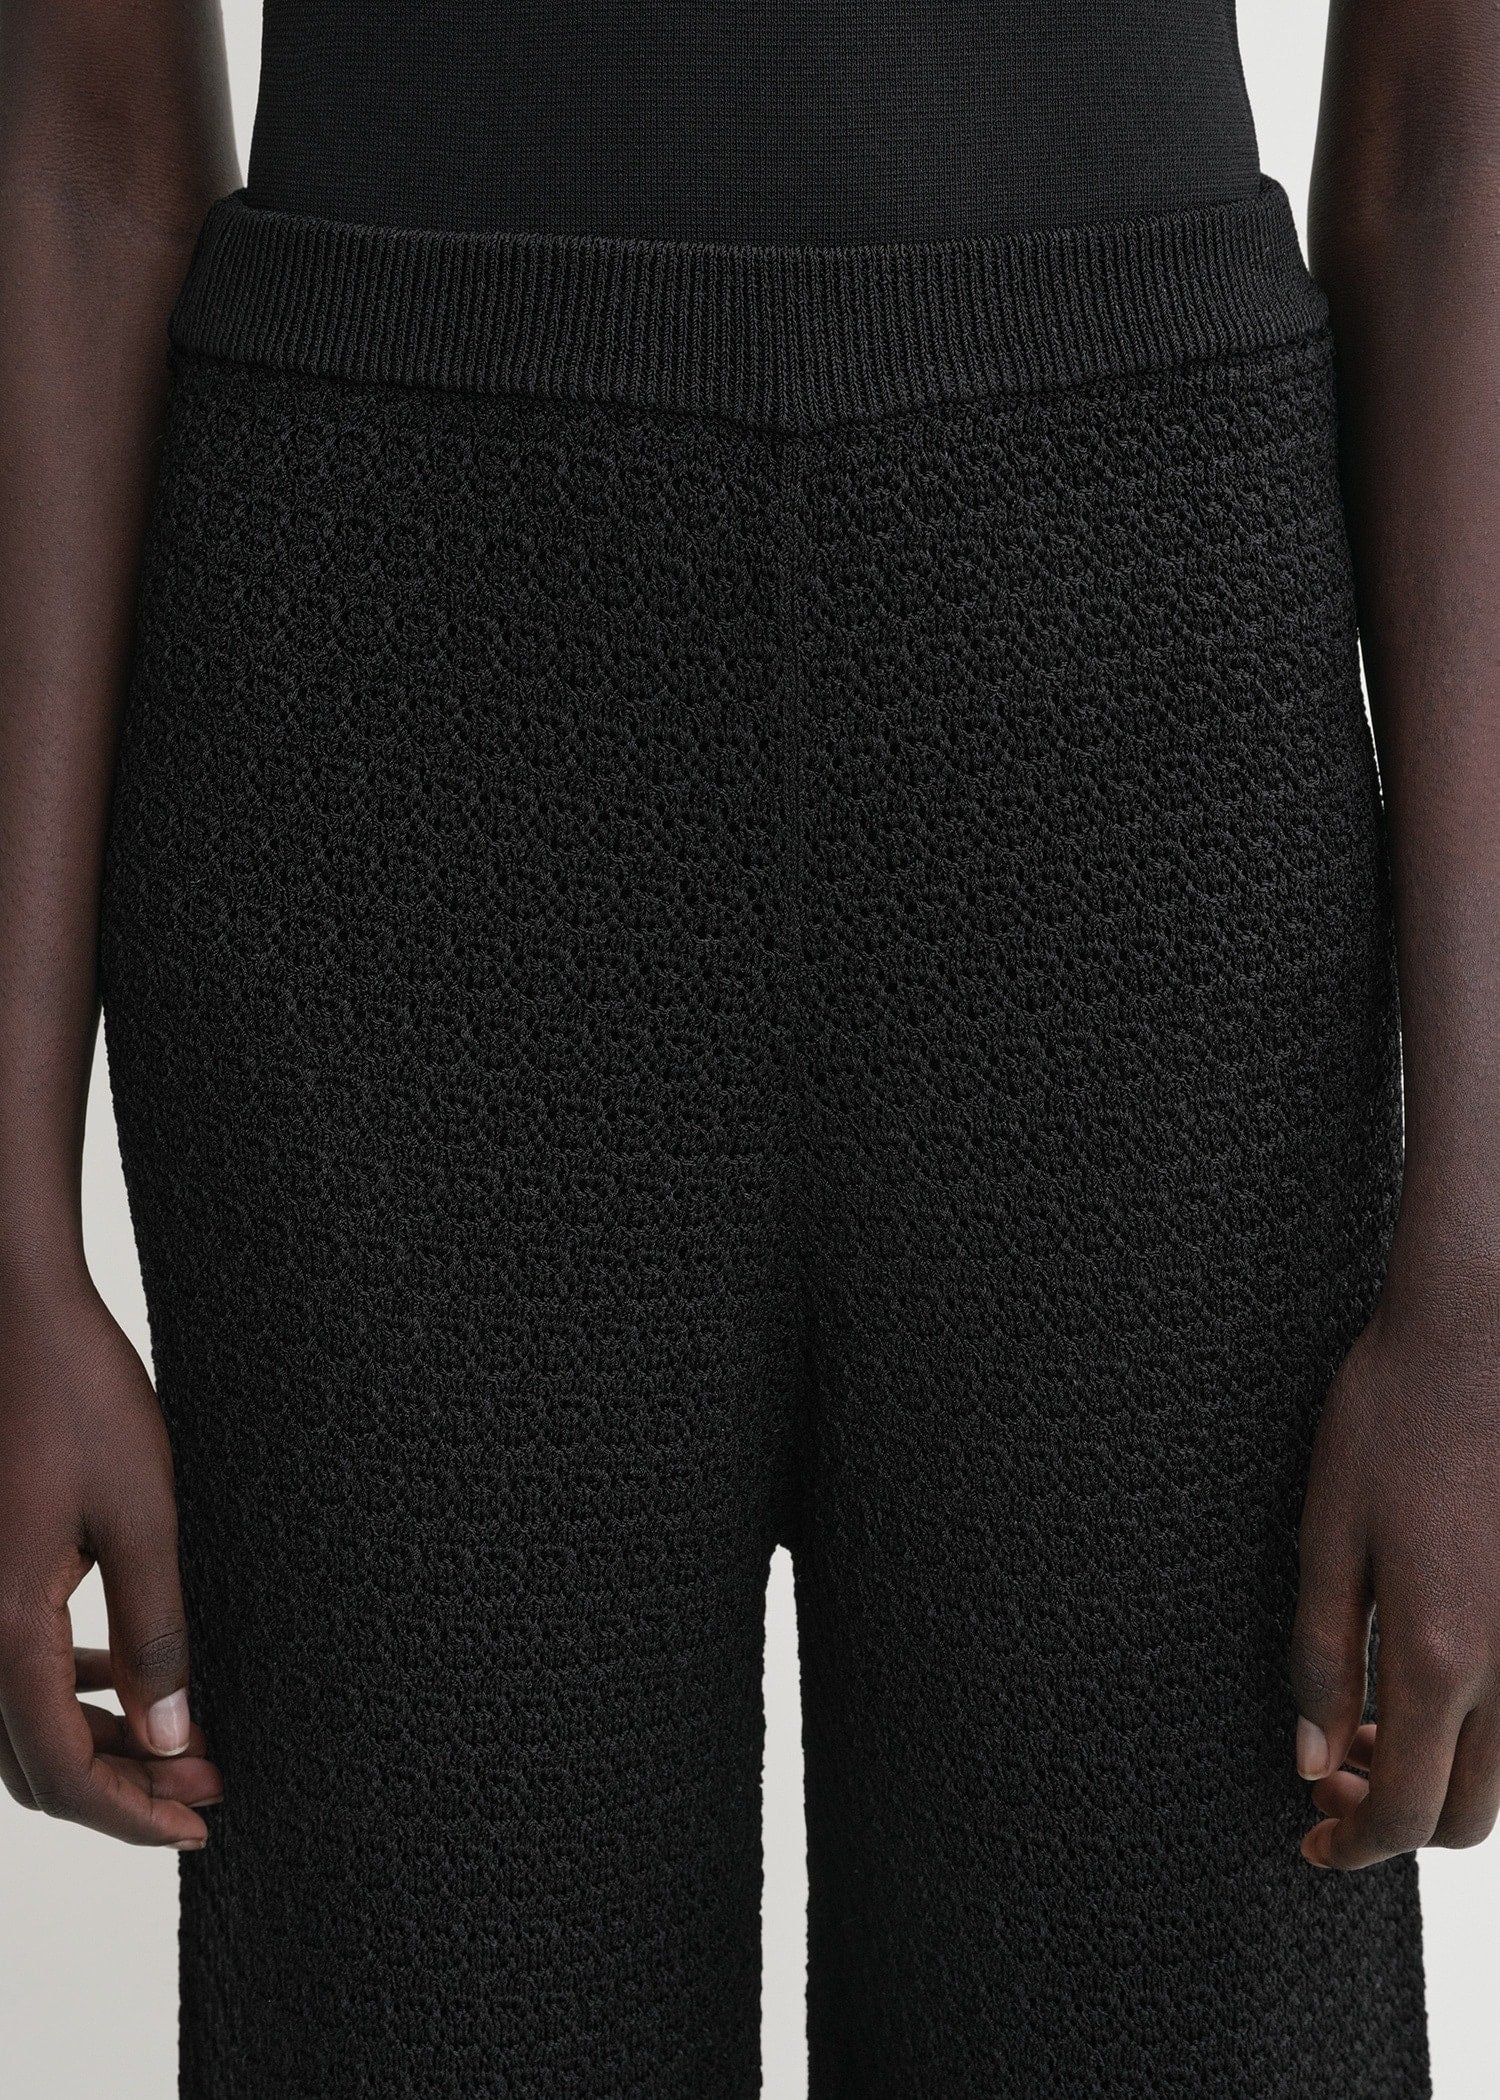 Crochet trousers black - 5